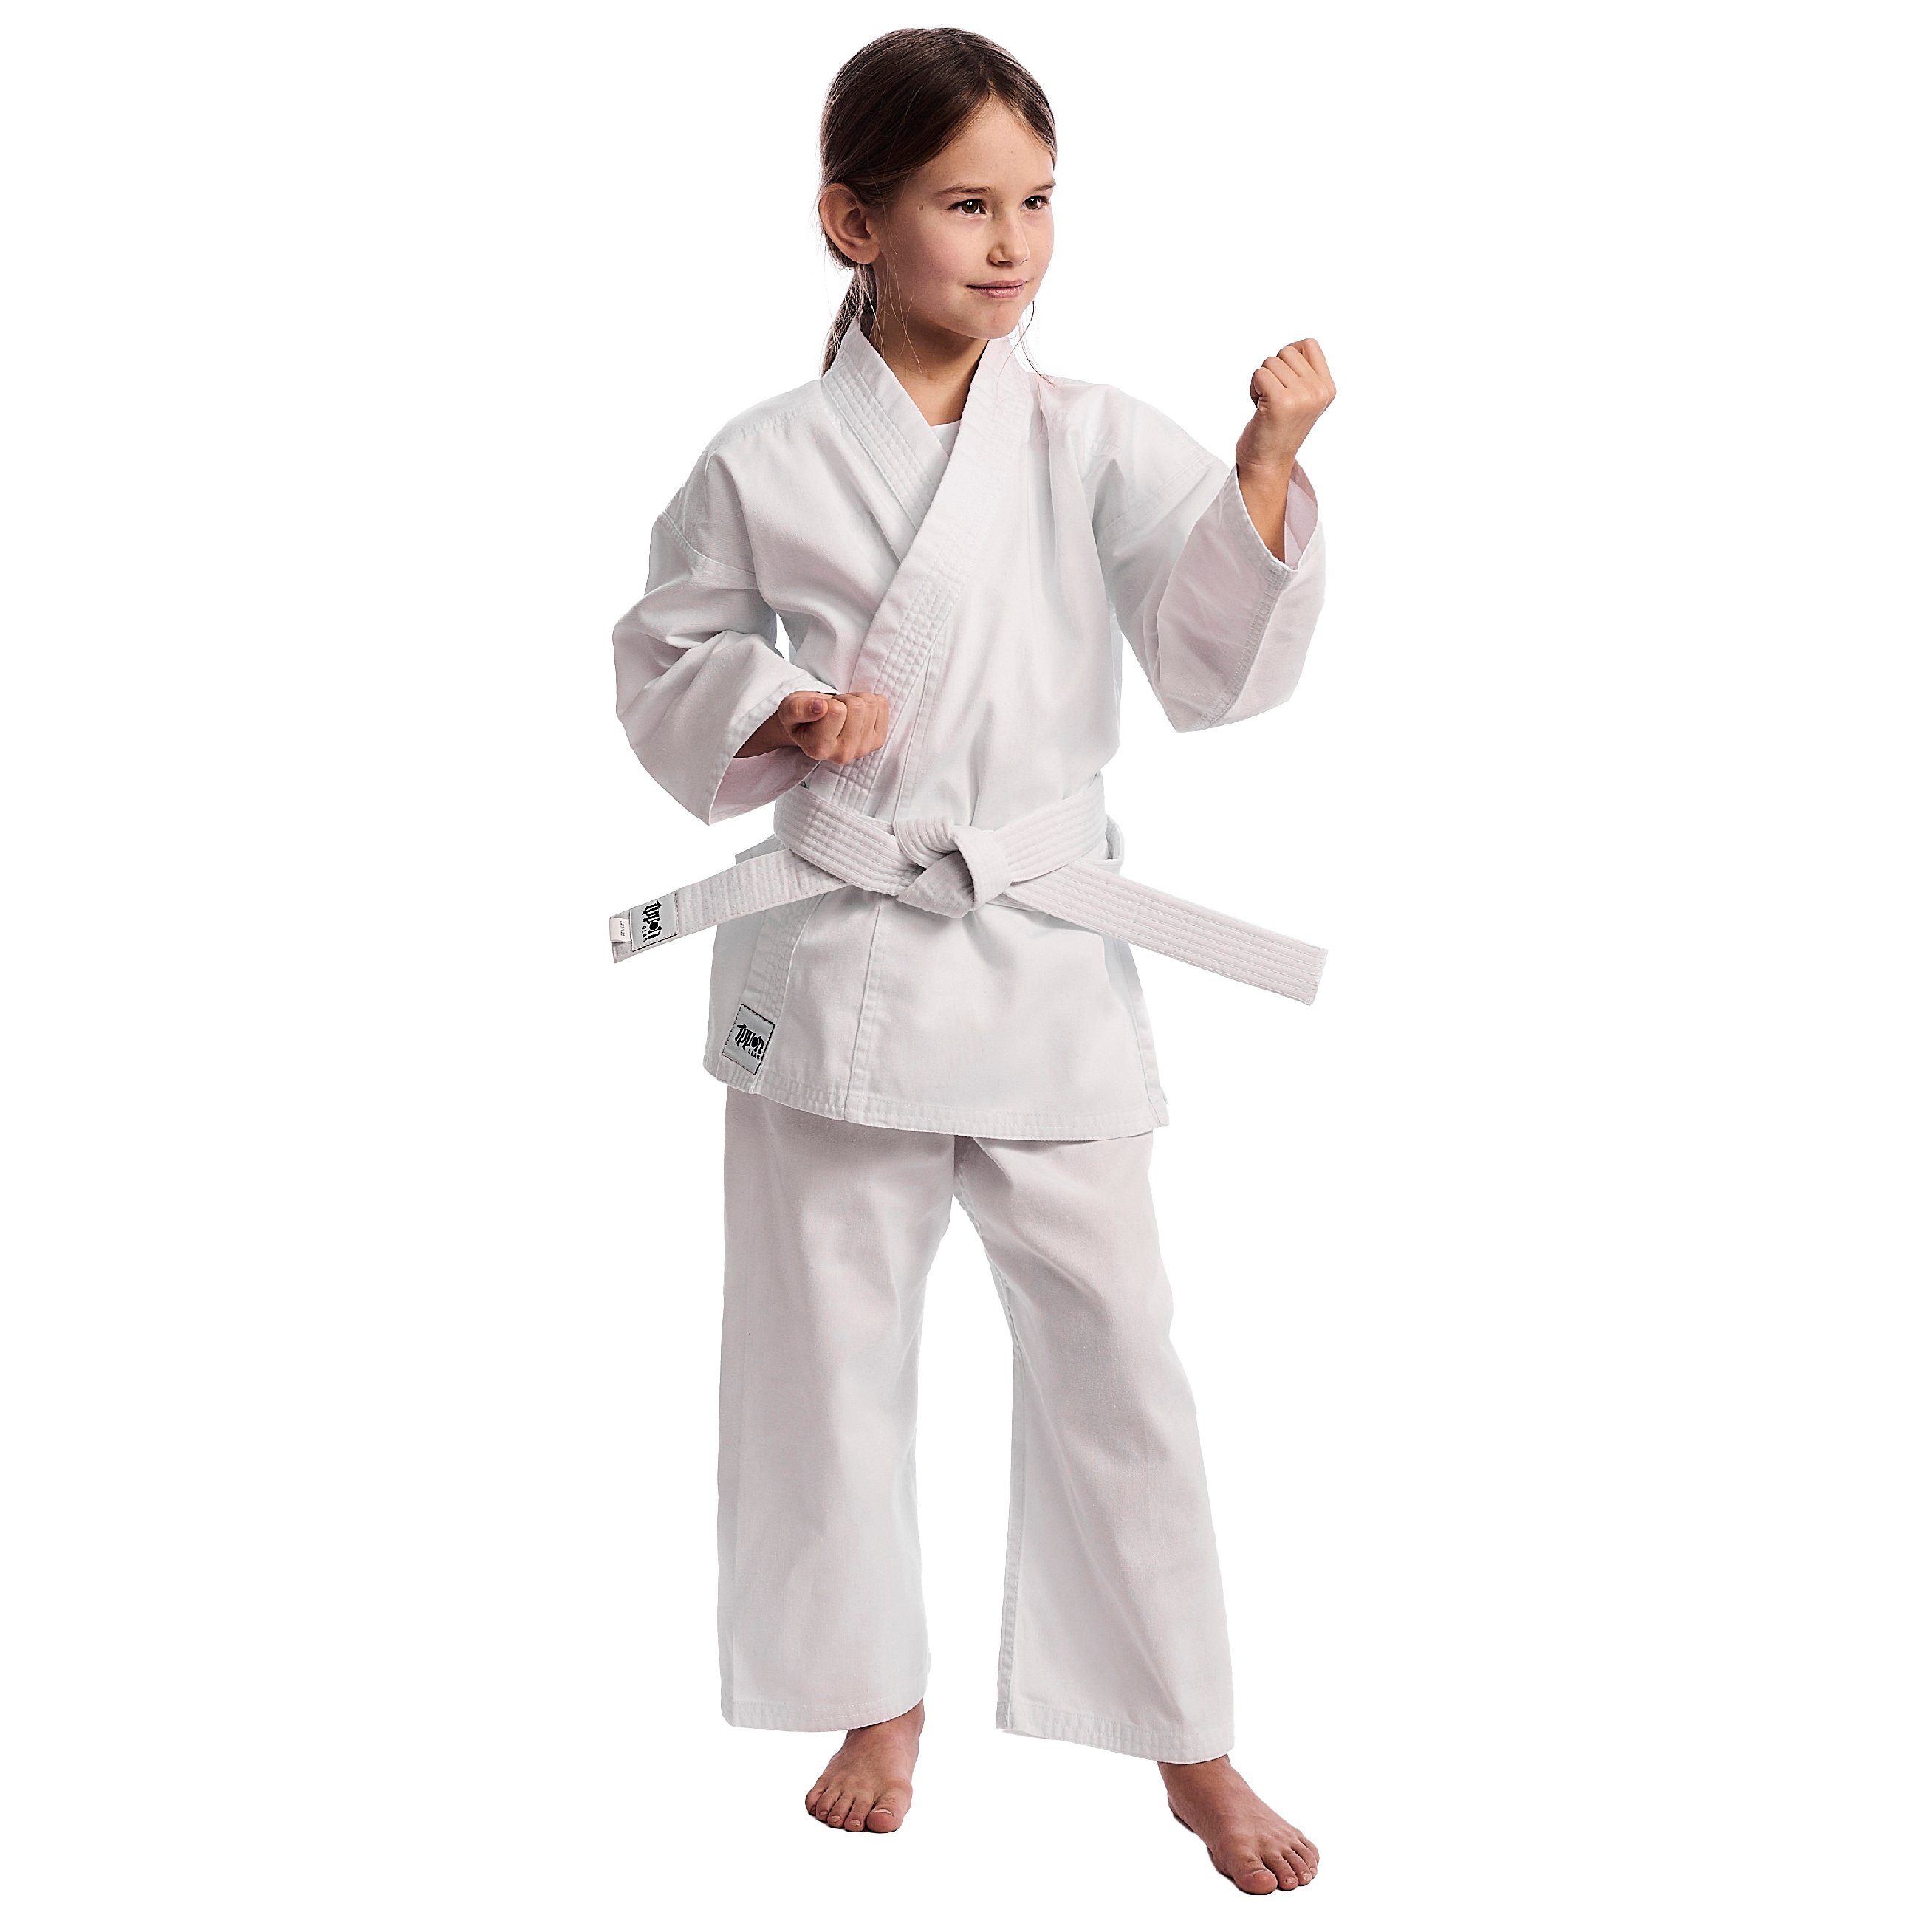 Kinder Kindersportbekleidung IPPON GEAR Karateanzug Club Karate GI Set Einsteiger Karateanzug Kinder Anzug inkl. Gürtel, [Größe 